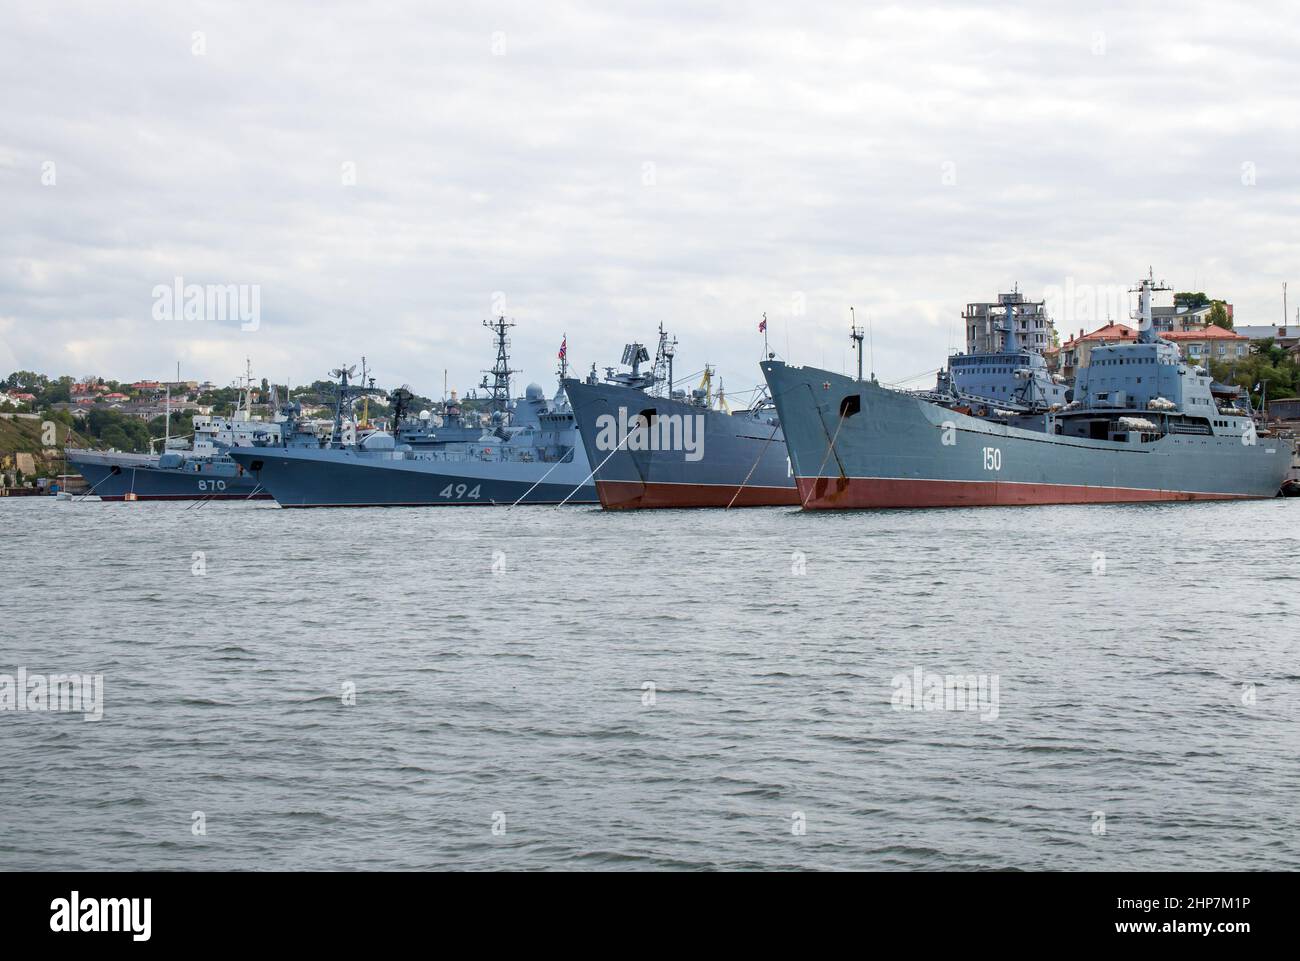 Sevastopol, Crimea - September 19, 2020: Anchorage of Russian warships in the South Bay, Sevastopol, Crimea Stock Photo